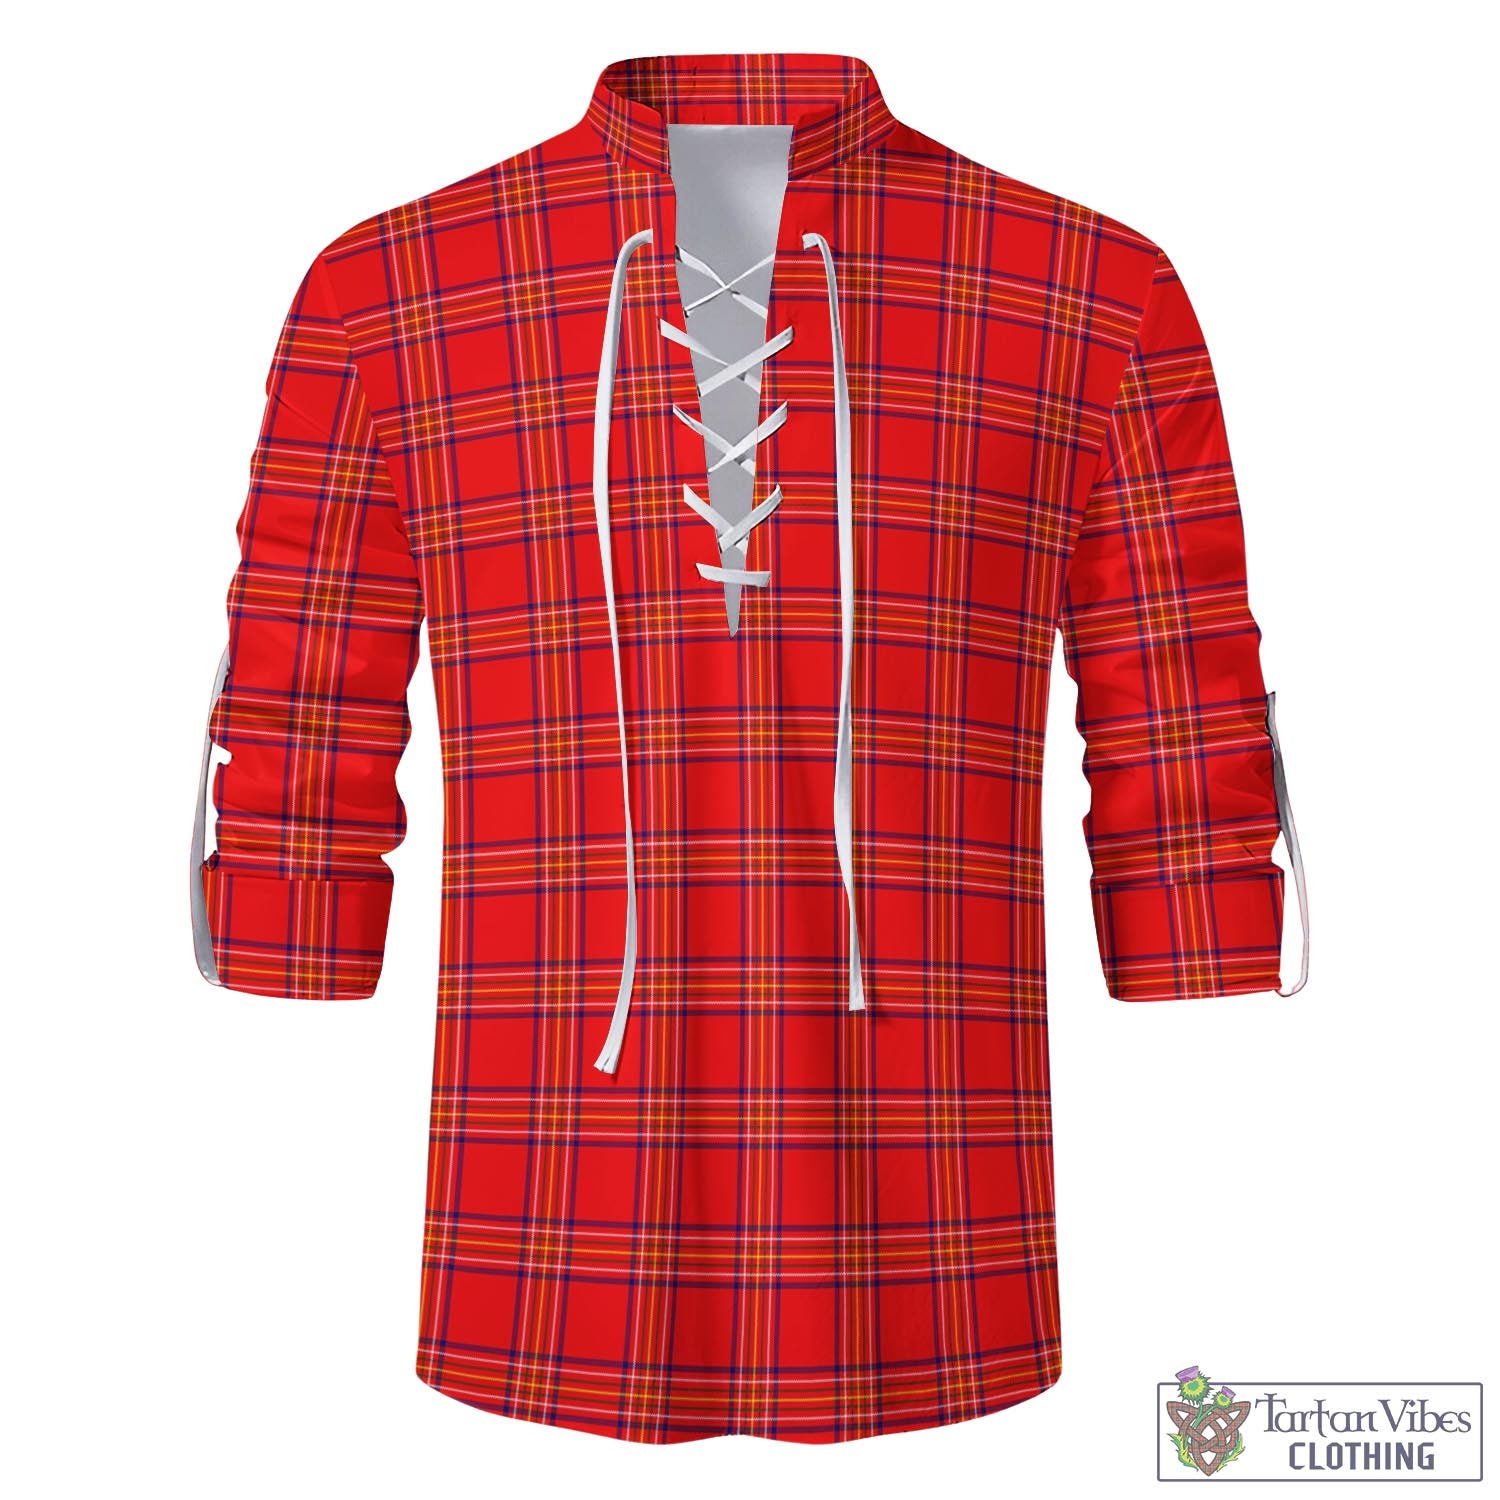 Tartan Vibes Clothing Burnett Modern Tartan Men's Scottish Traditional Jacobite Ghillie Kilt Shirt